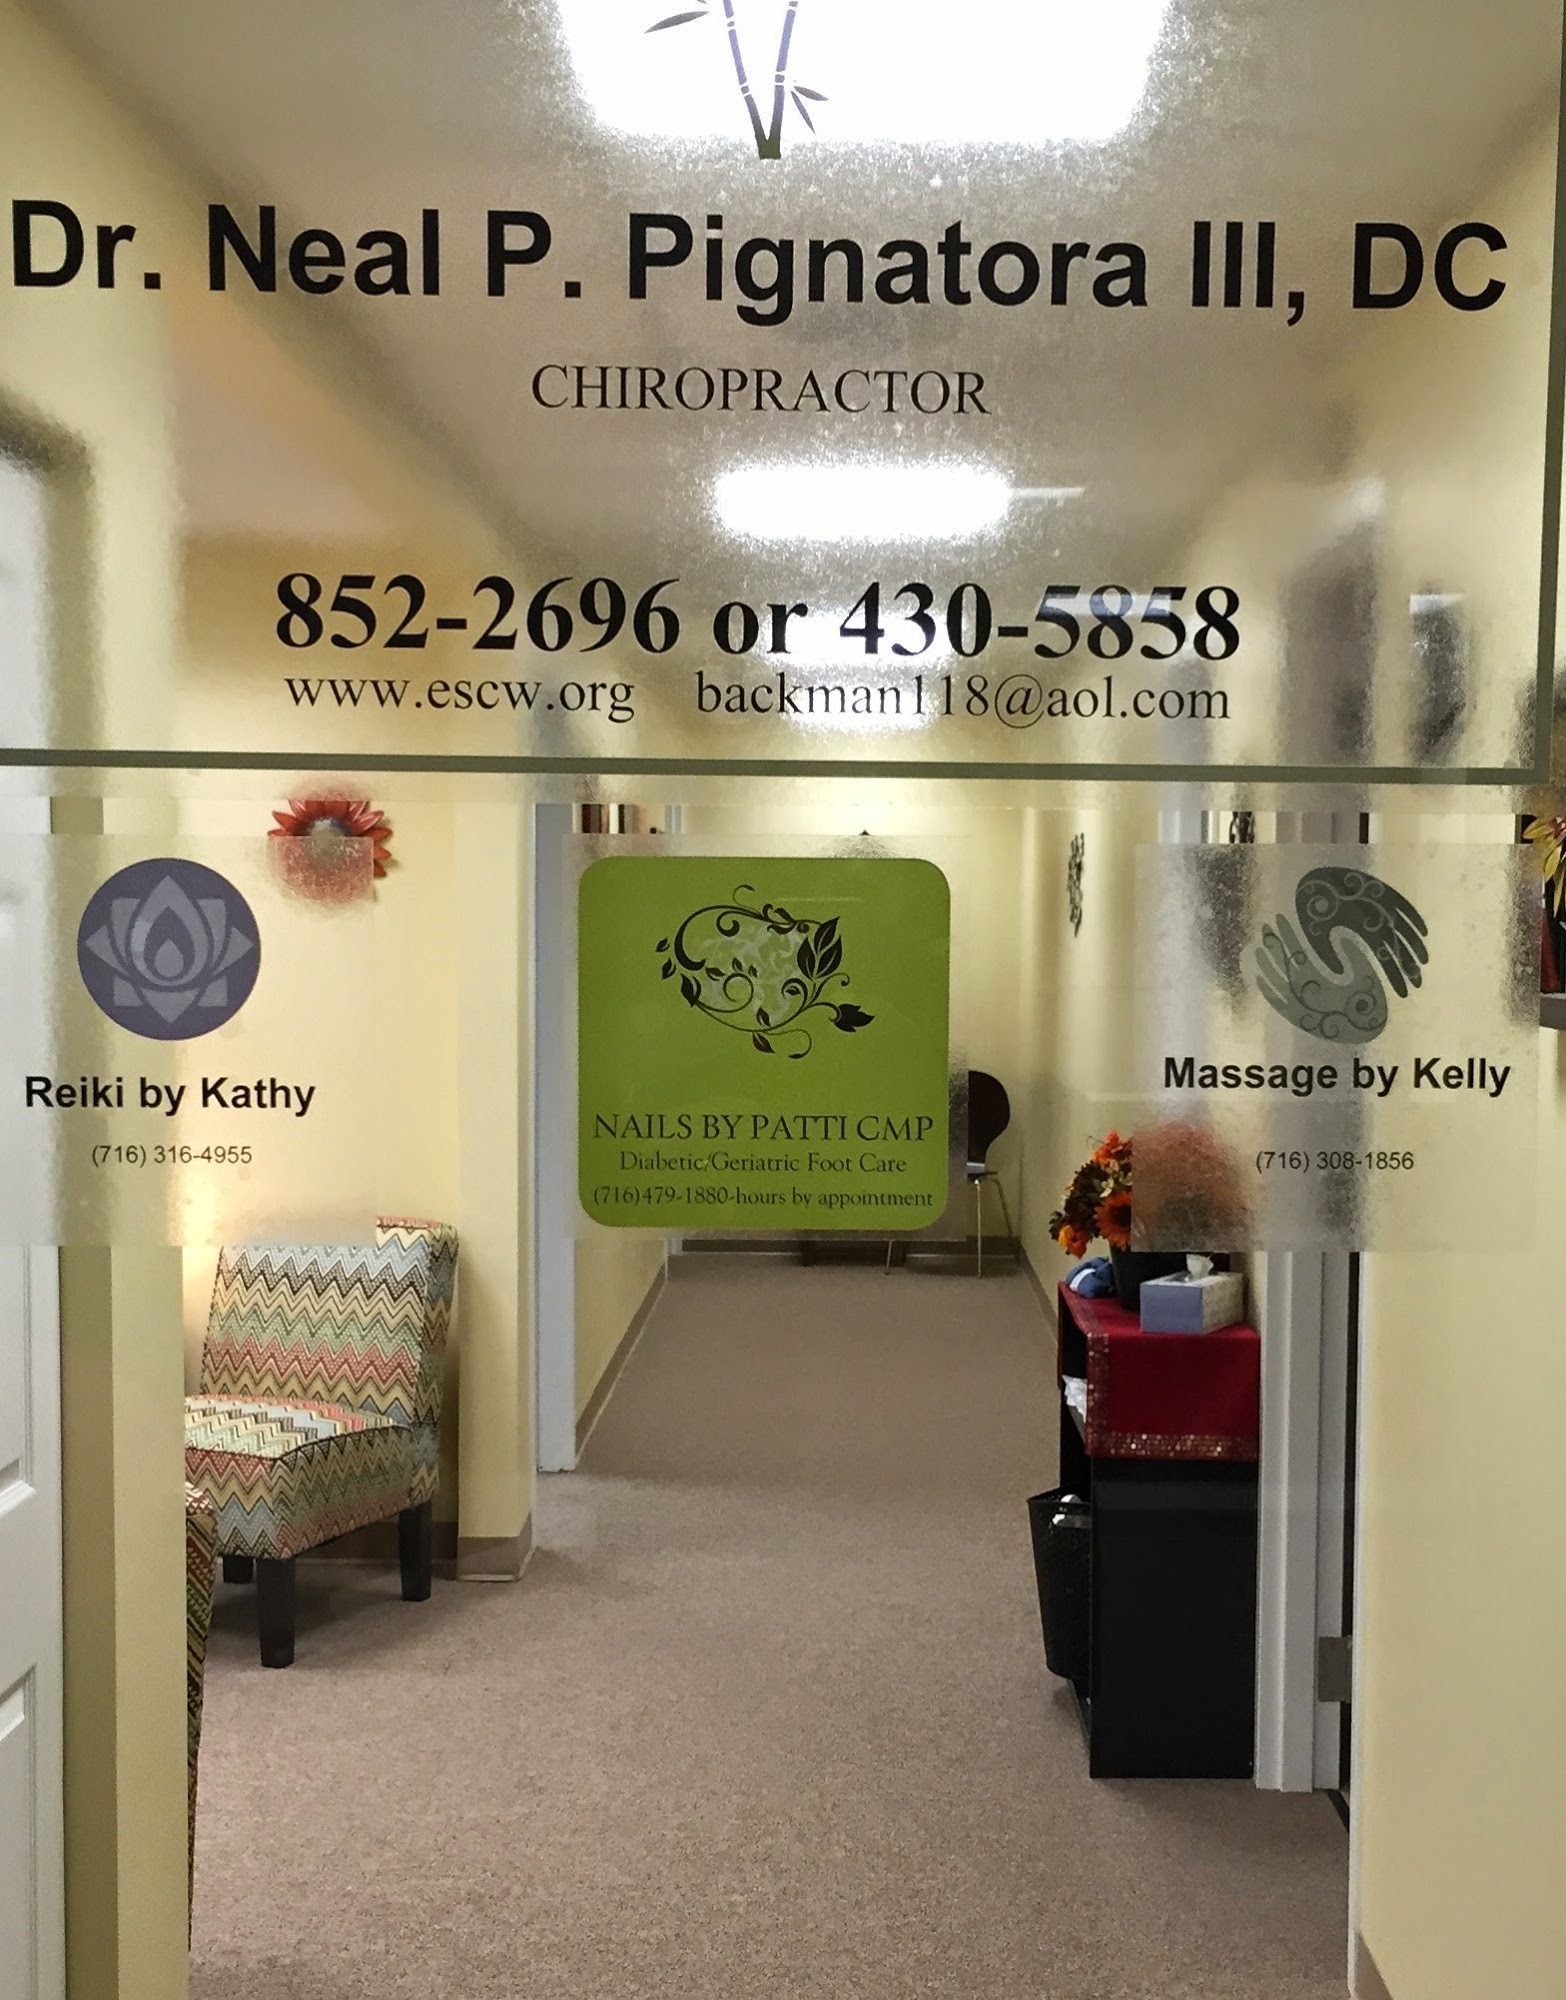 Dr. Neal P Pignatora III, DC